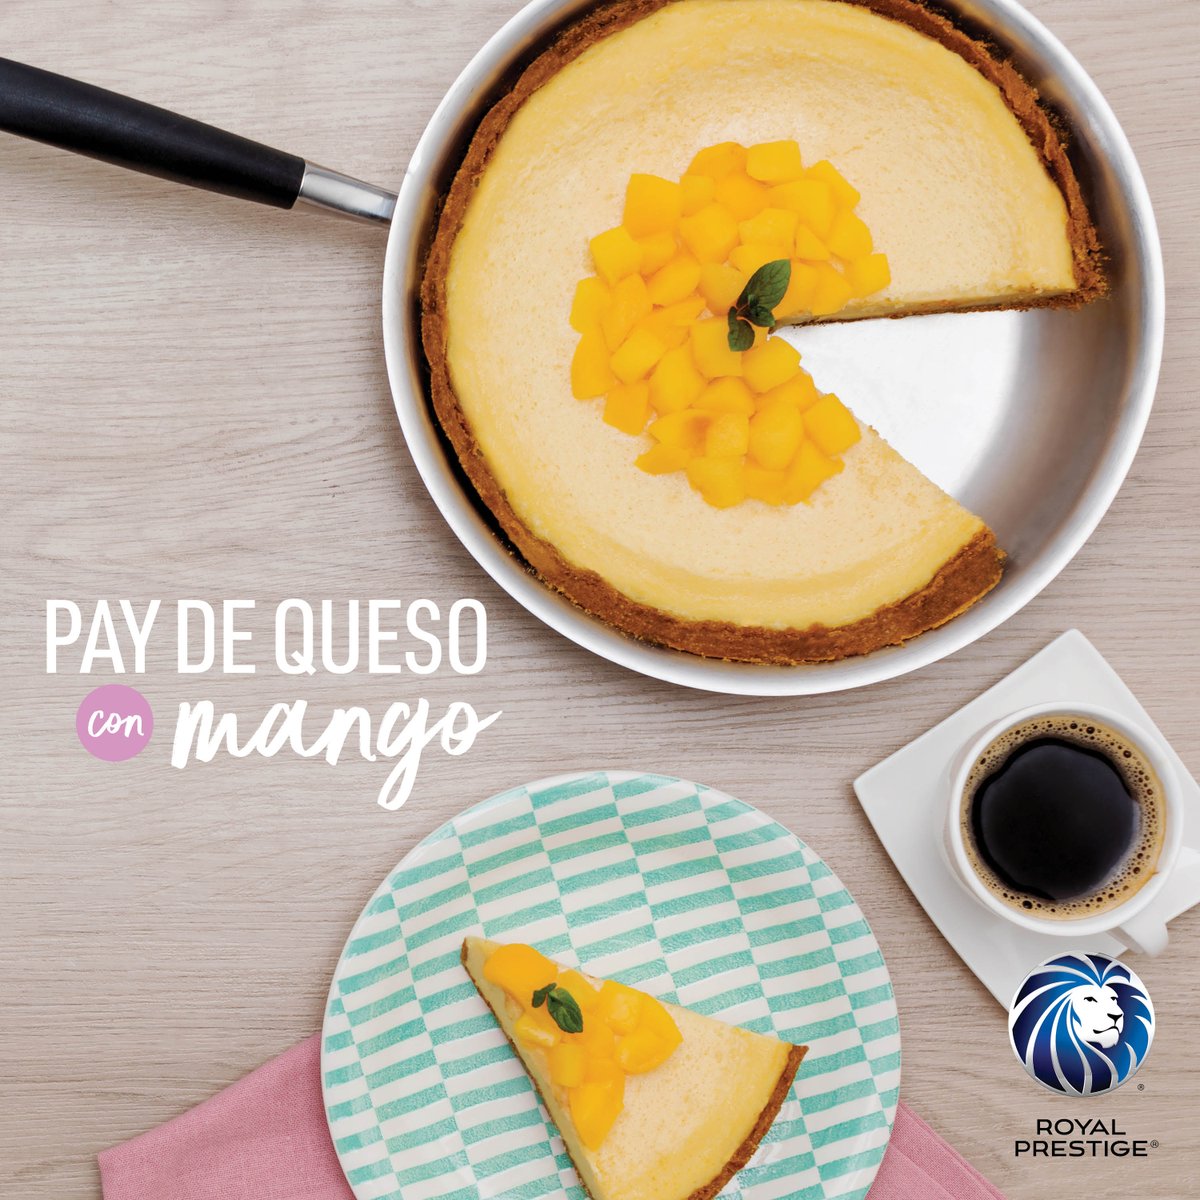 Royal Prestige México på Twitter: ”¿Se te olvidó el pastel? ?  #RoyalPrestige te tiene la solución perfecta con este pay de mango que  puedes cocinar en el sartén gourmet. ¡Le encantará a